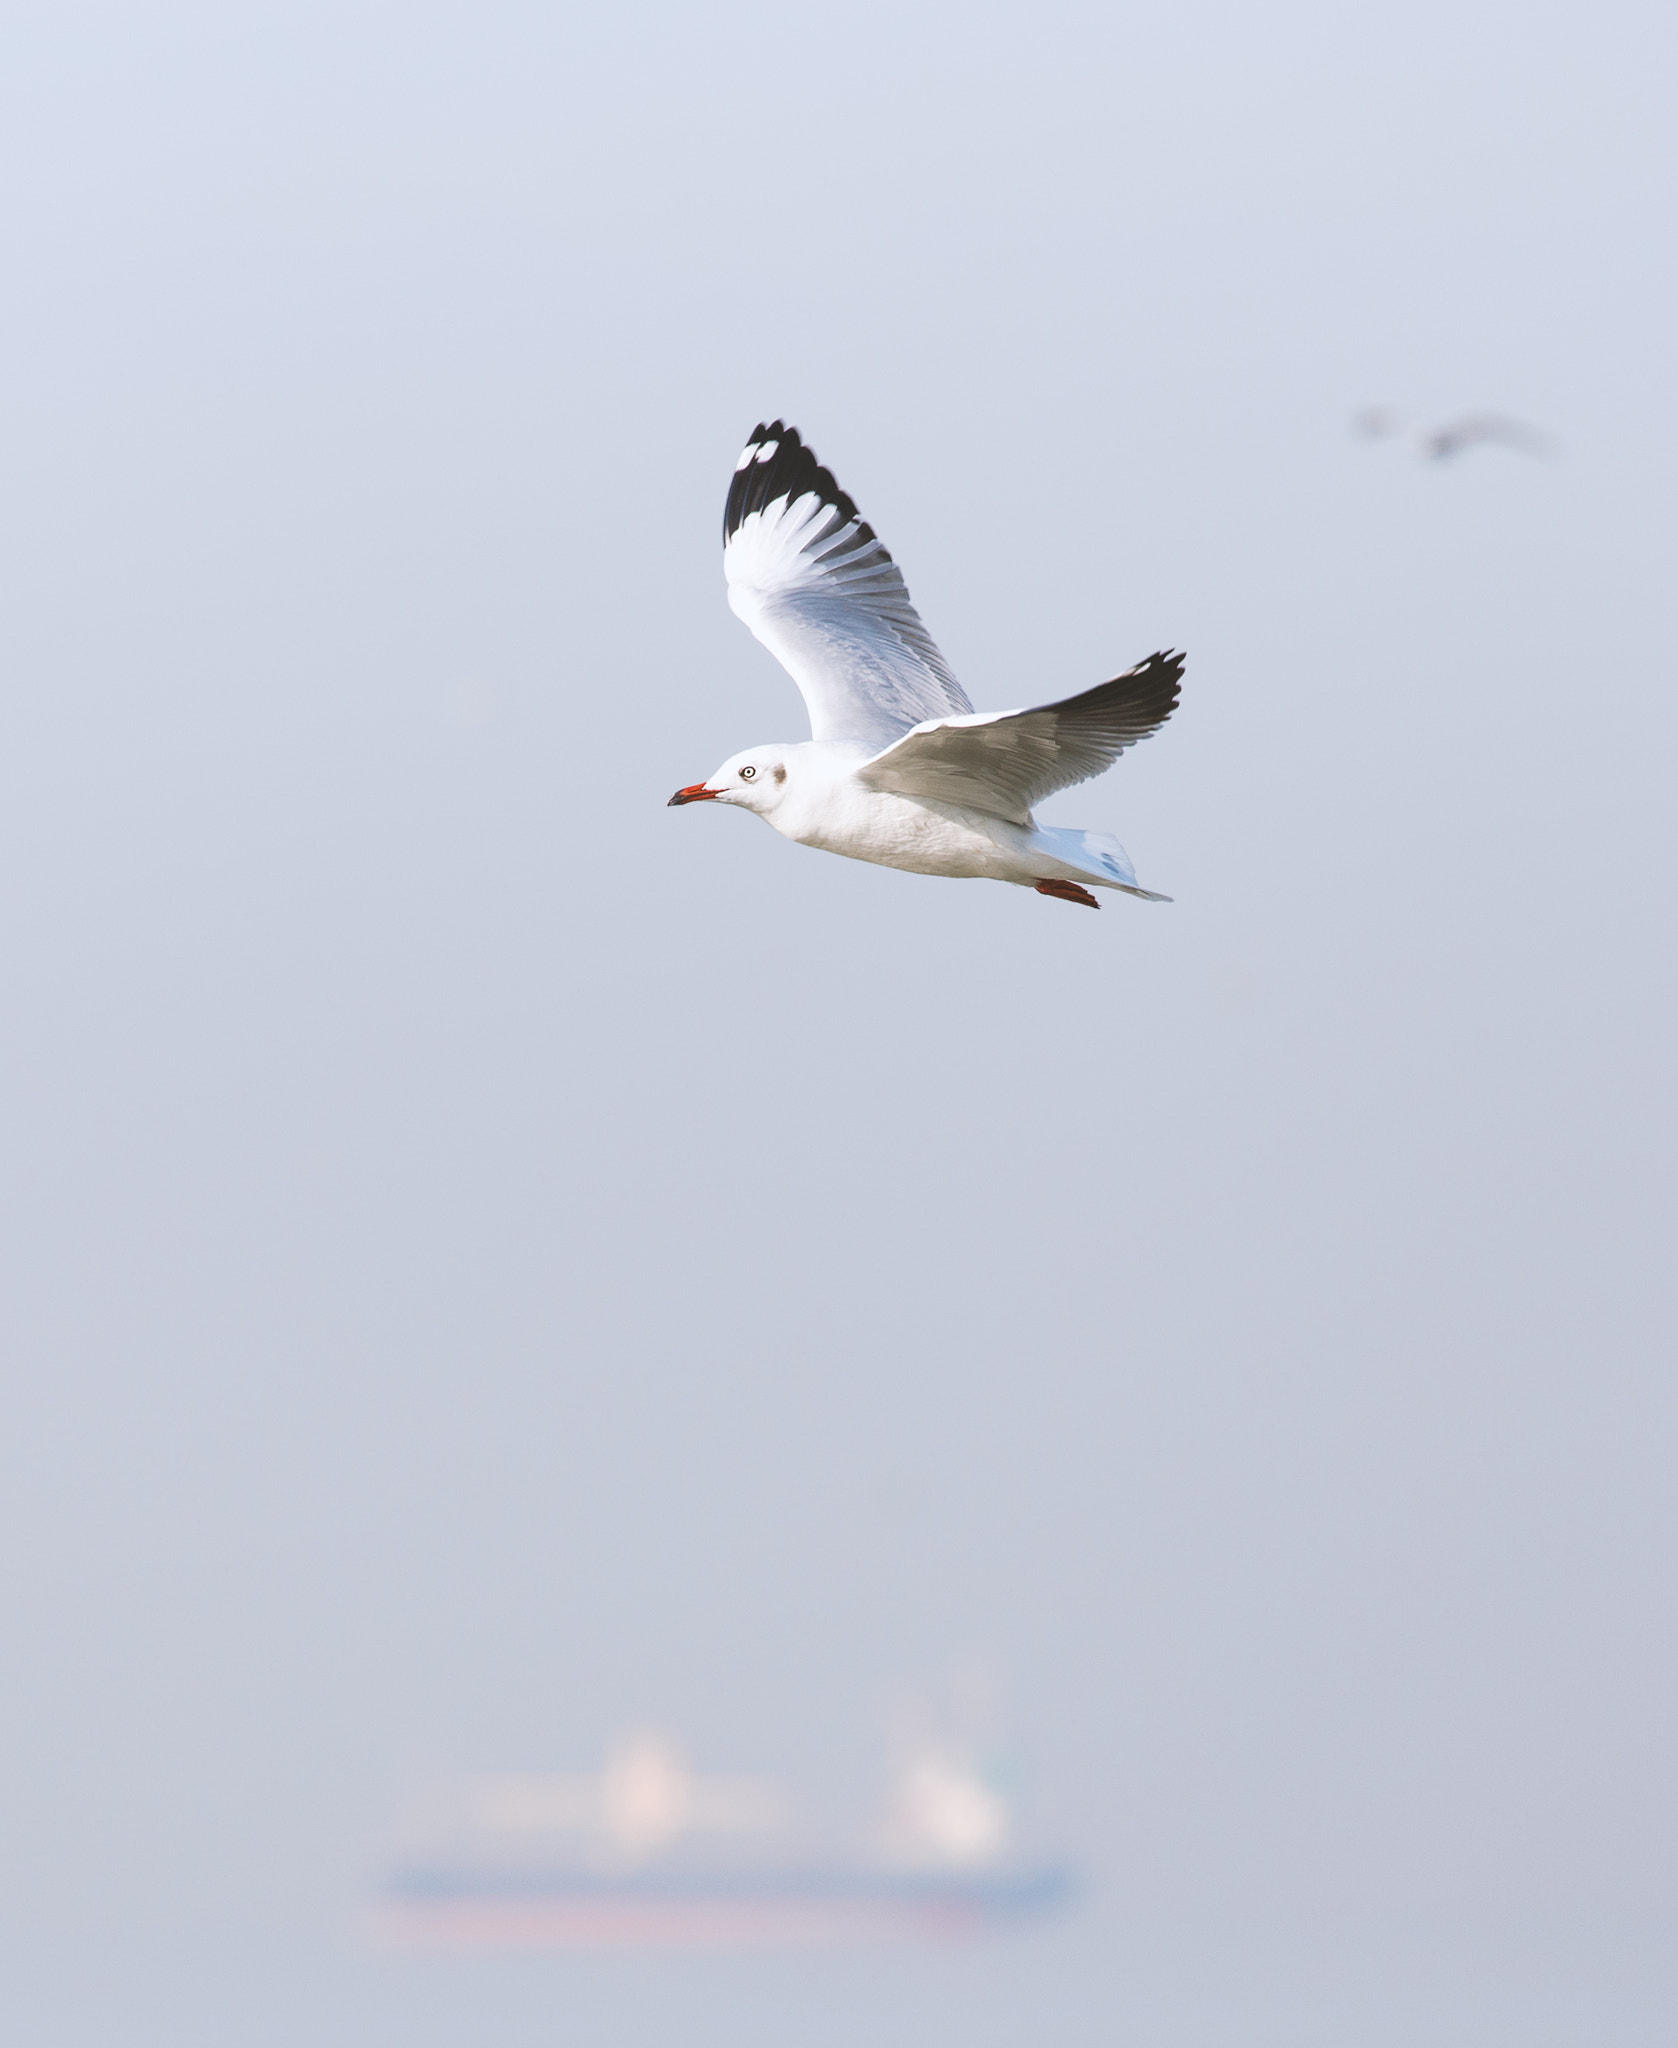 Soft scene of flying seagull